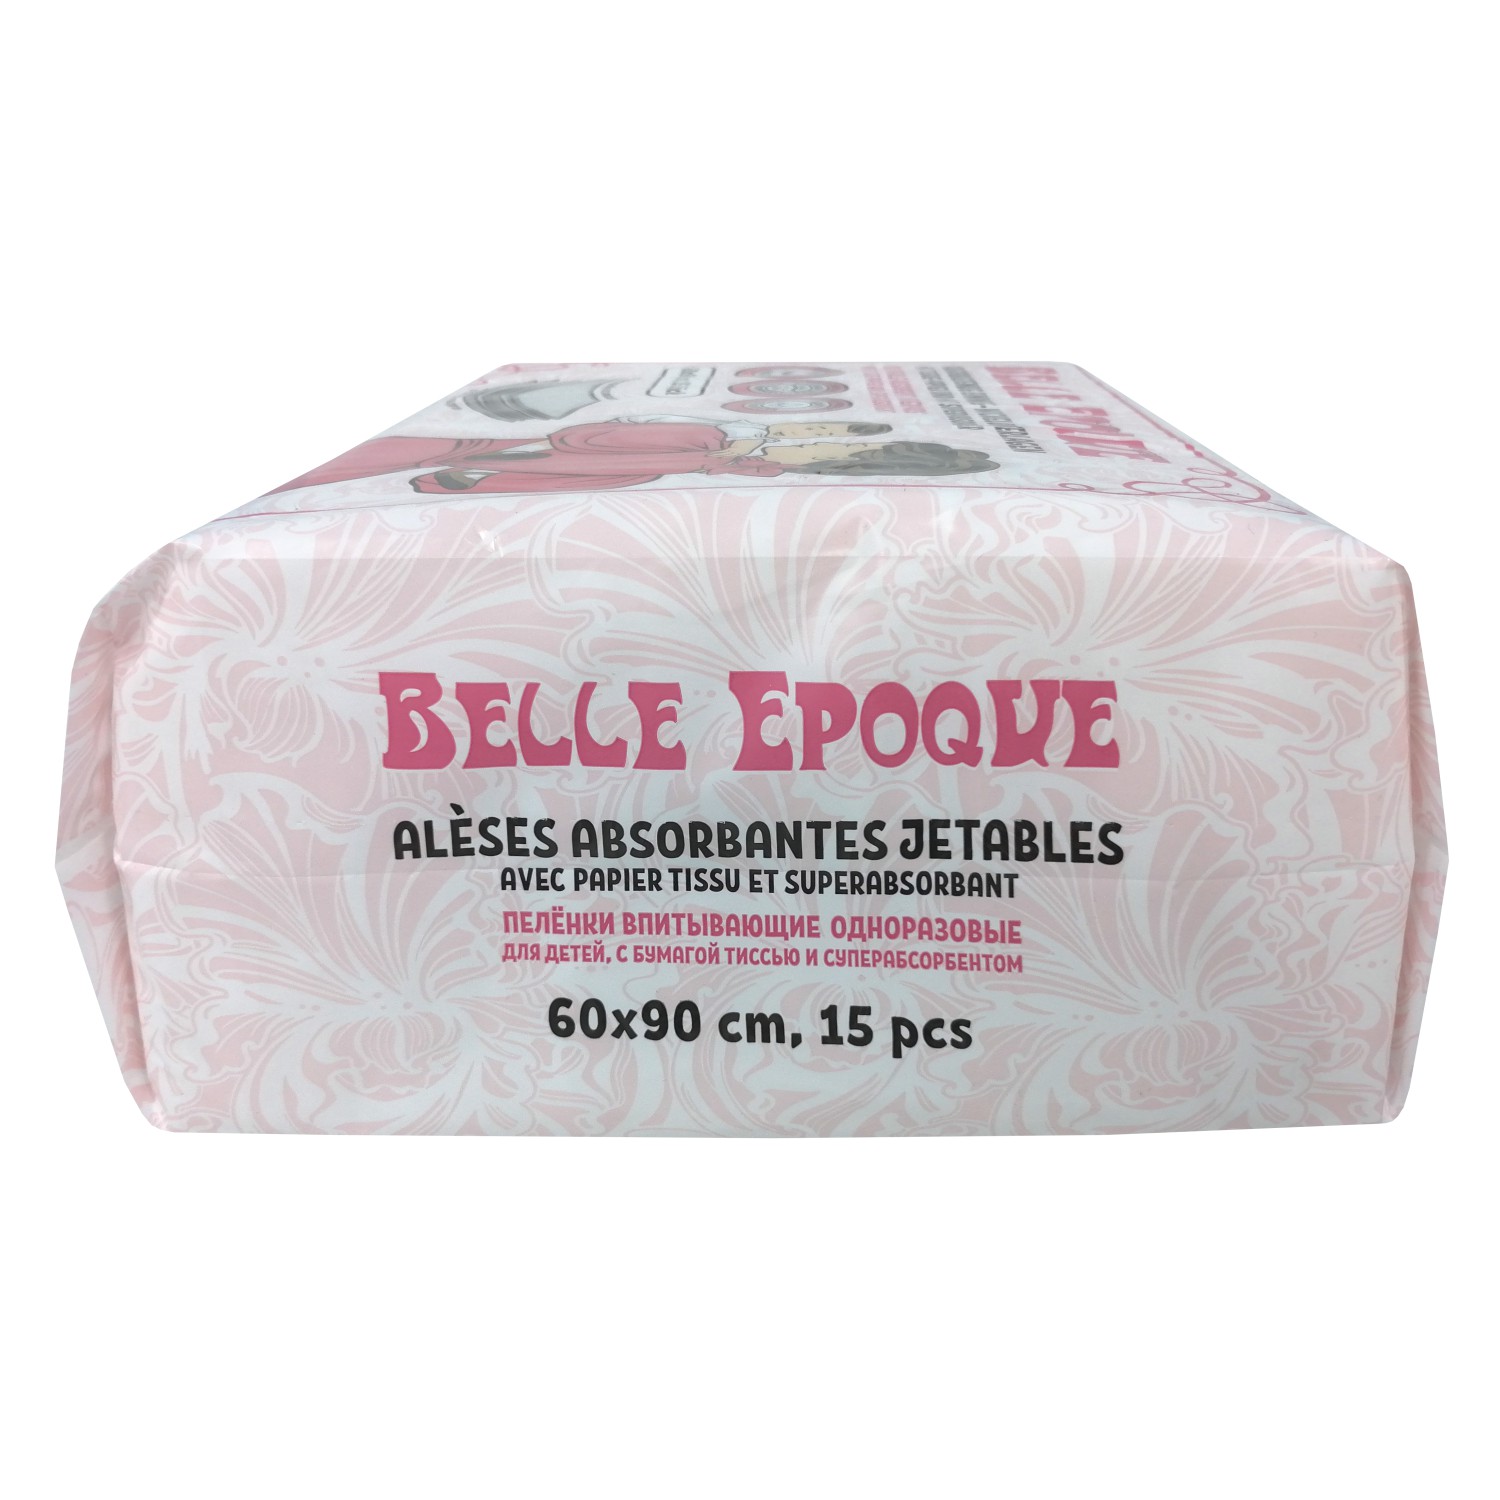 Пеленки Belle Epoque 60*90см 15шт - фото 6